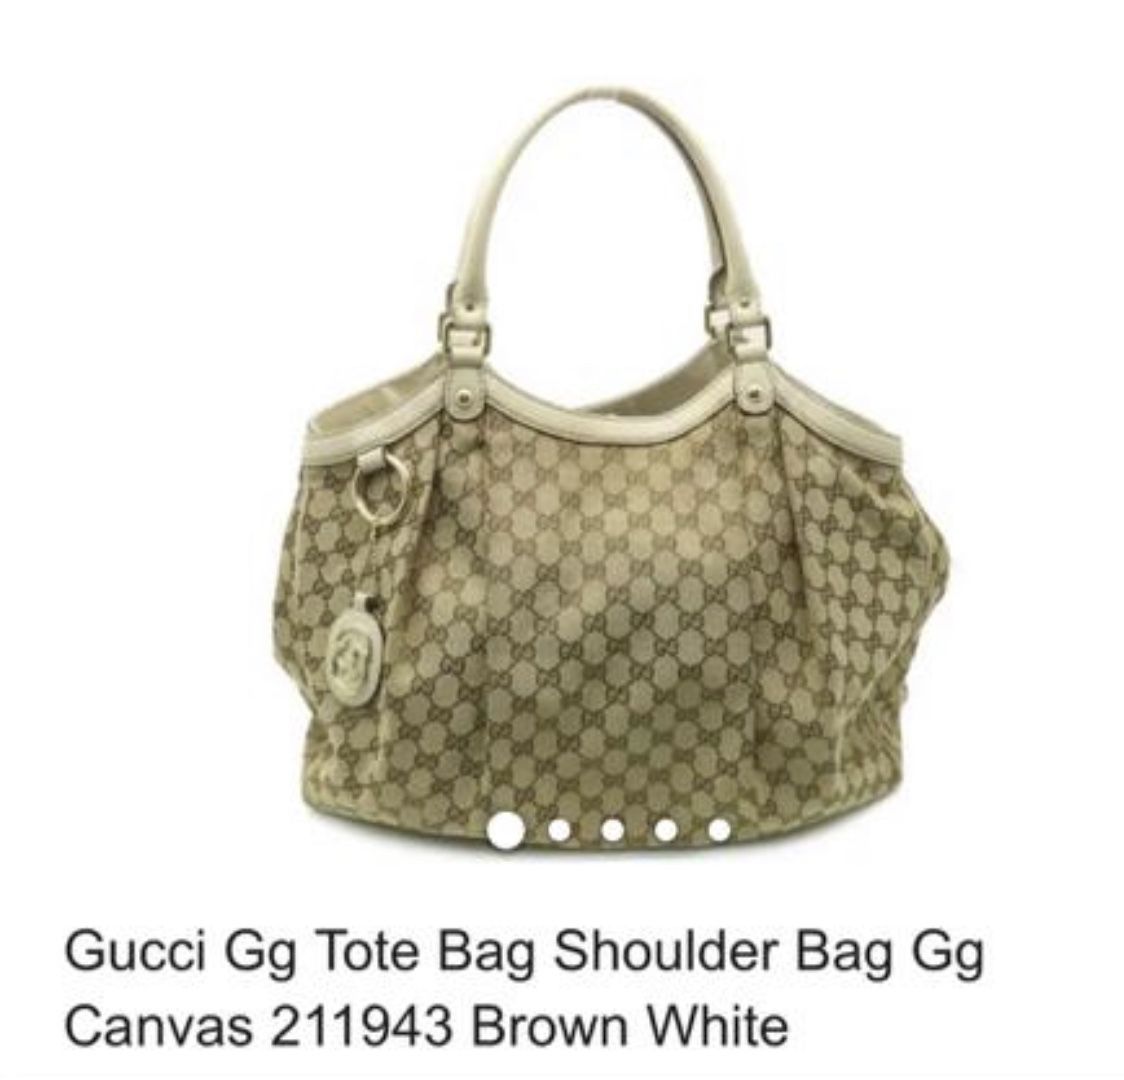 Gucci Tote Bag Use